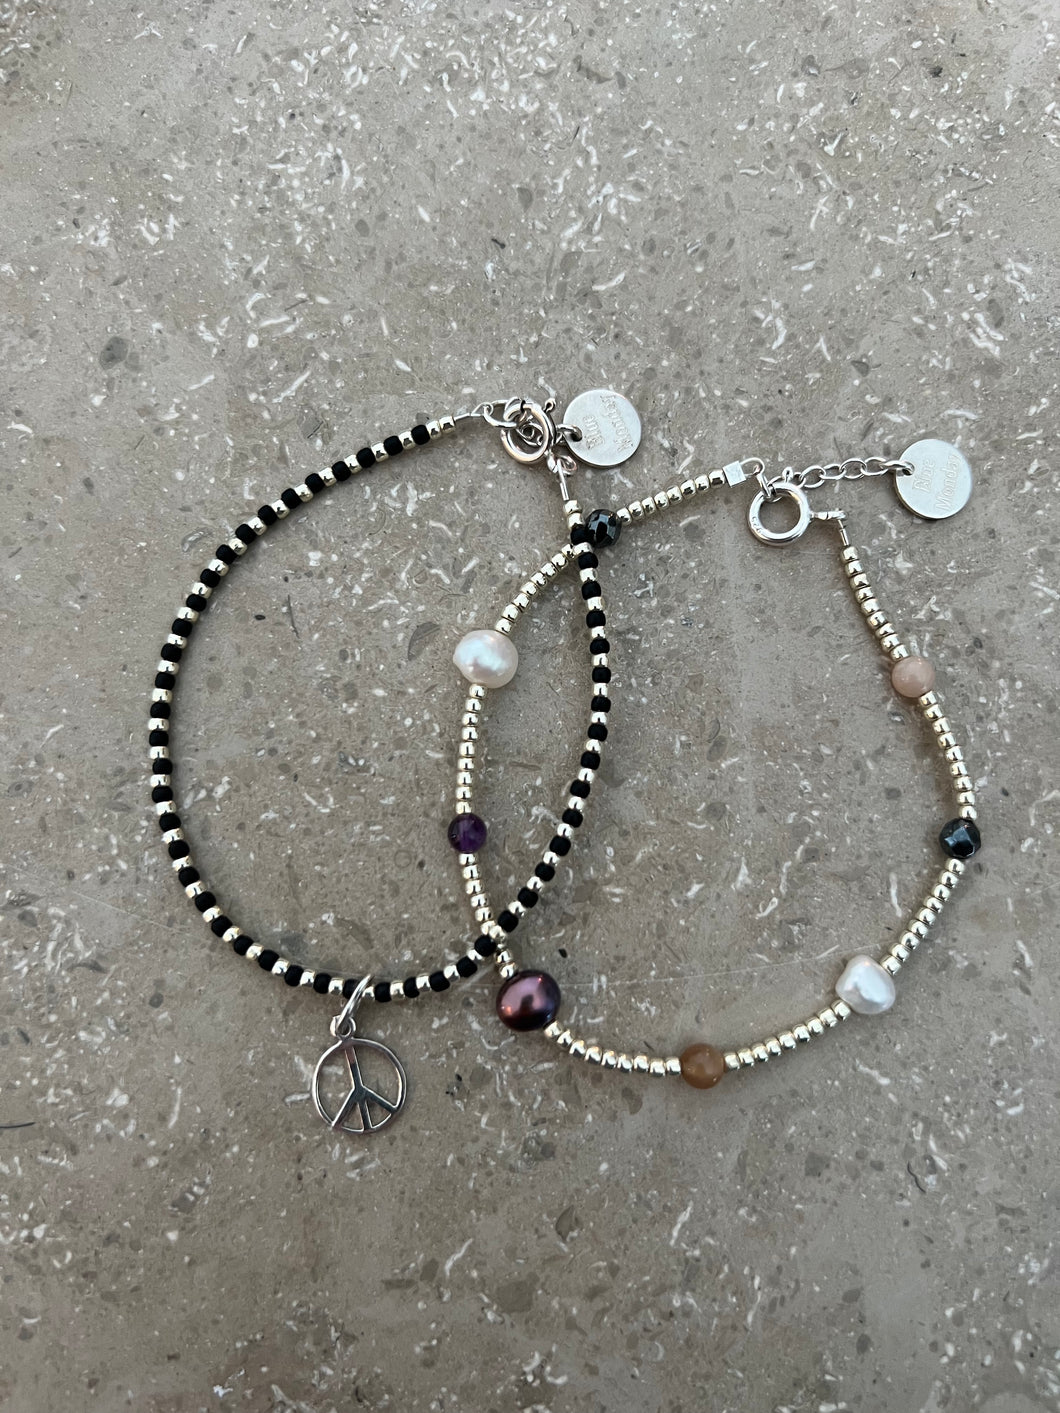 Pearl bracelet with half gemstones or peace